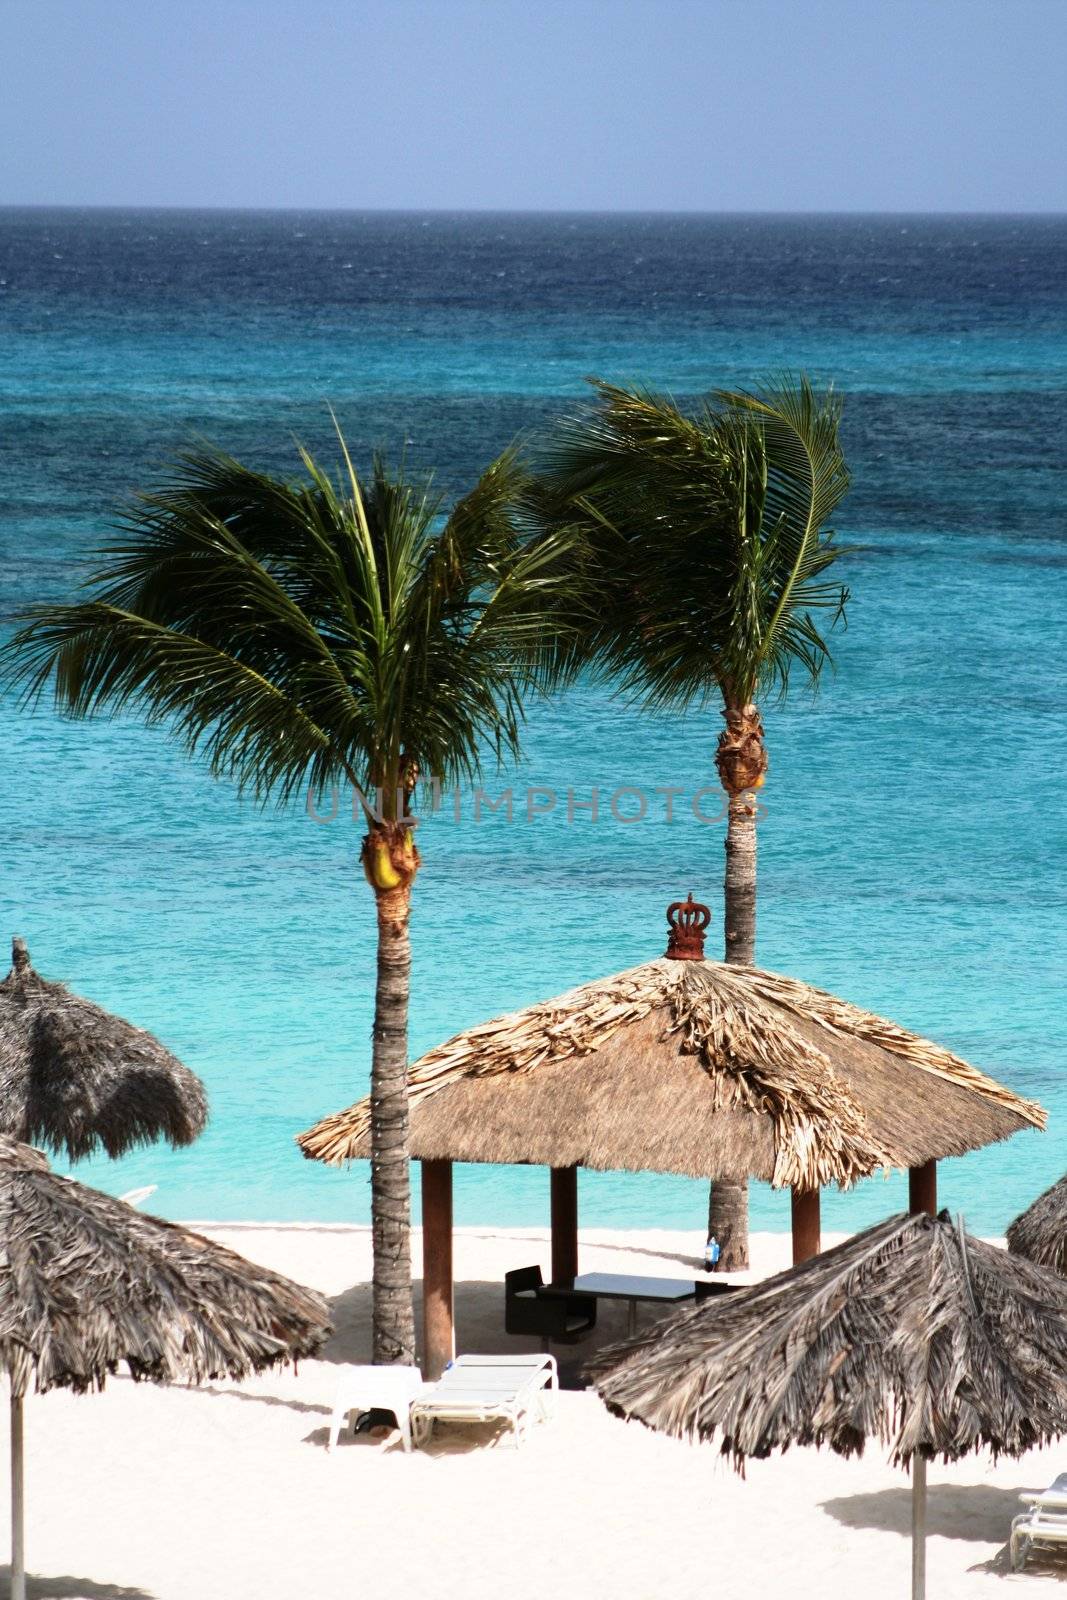 Relax on the beach under the palms, Aruba, Dutch Caribbean.